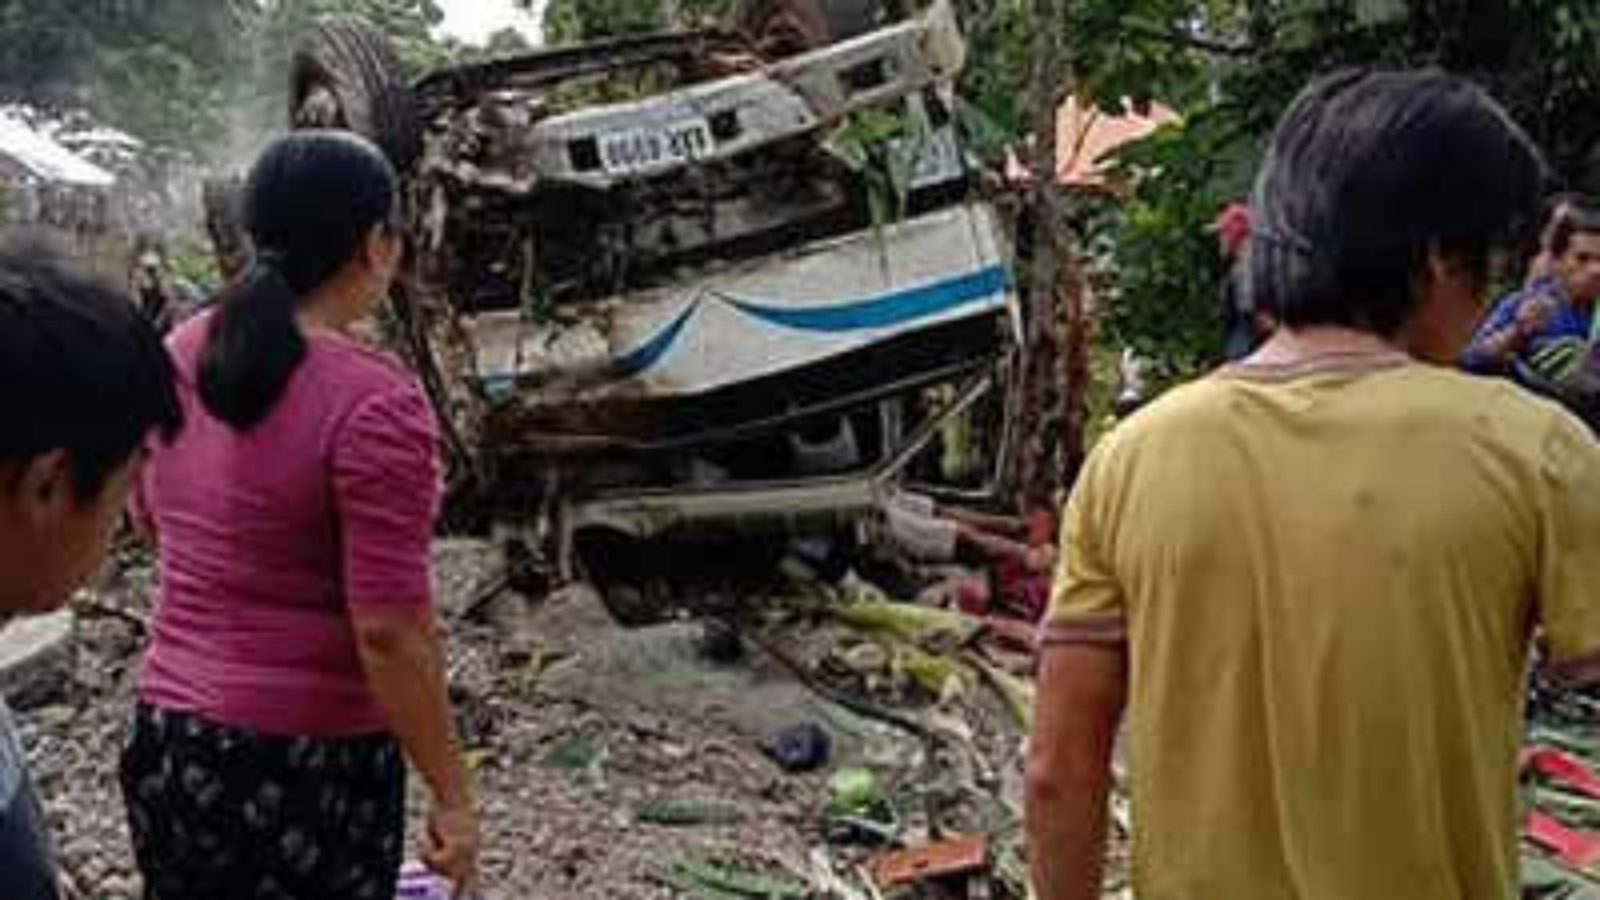 سكان ينظرون إلى حطام شاحنة انقلبت مما أسفر عن مقتل 11 شخصًا على الأقل في جنوب الفيليبين